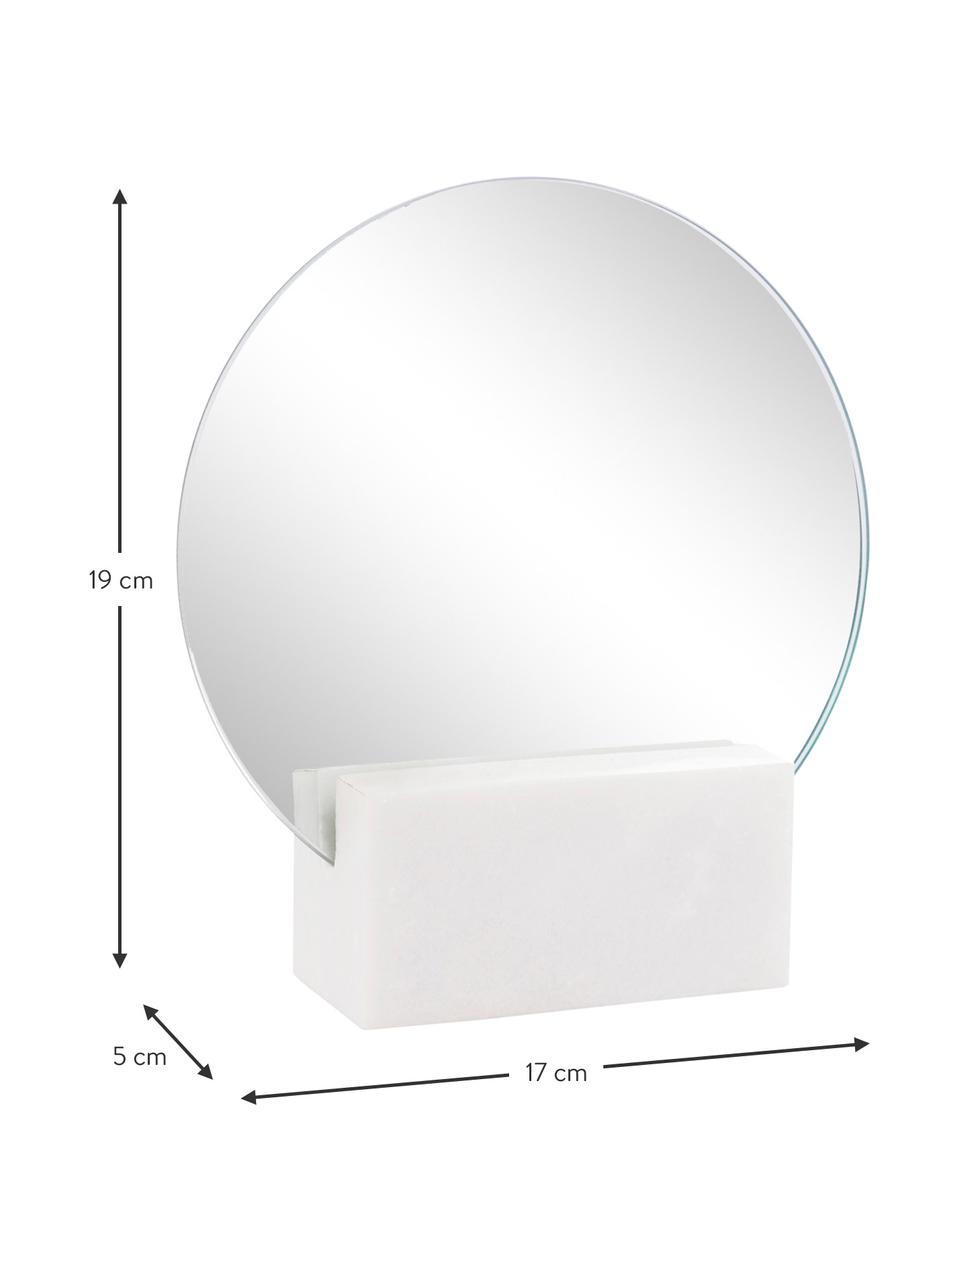 Kosmetikspiegel Humana, Spiegelfläche: Spiegelglas, Fuß: Marmor, Weiß, 17 x 19 cm